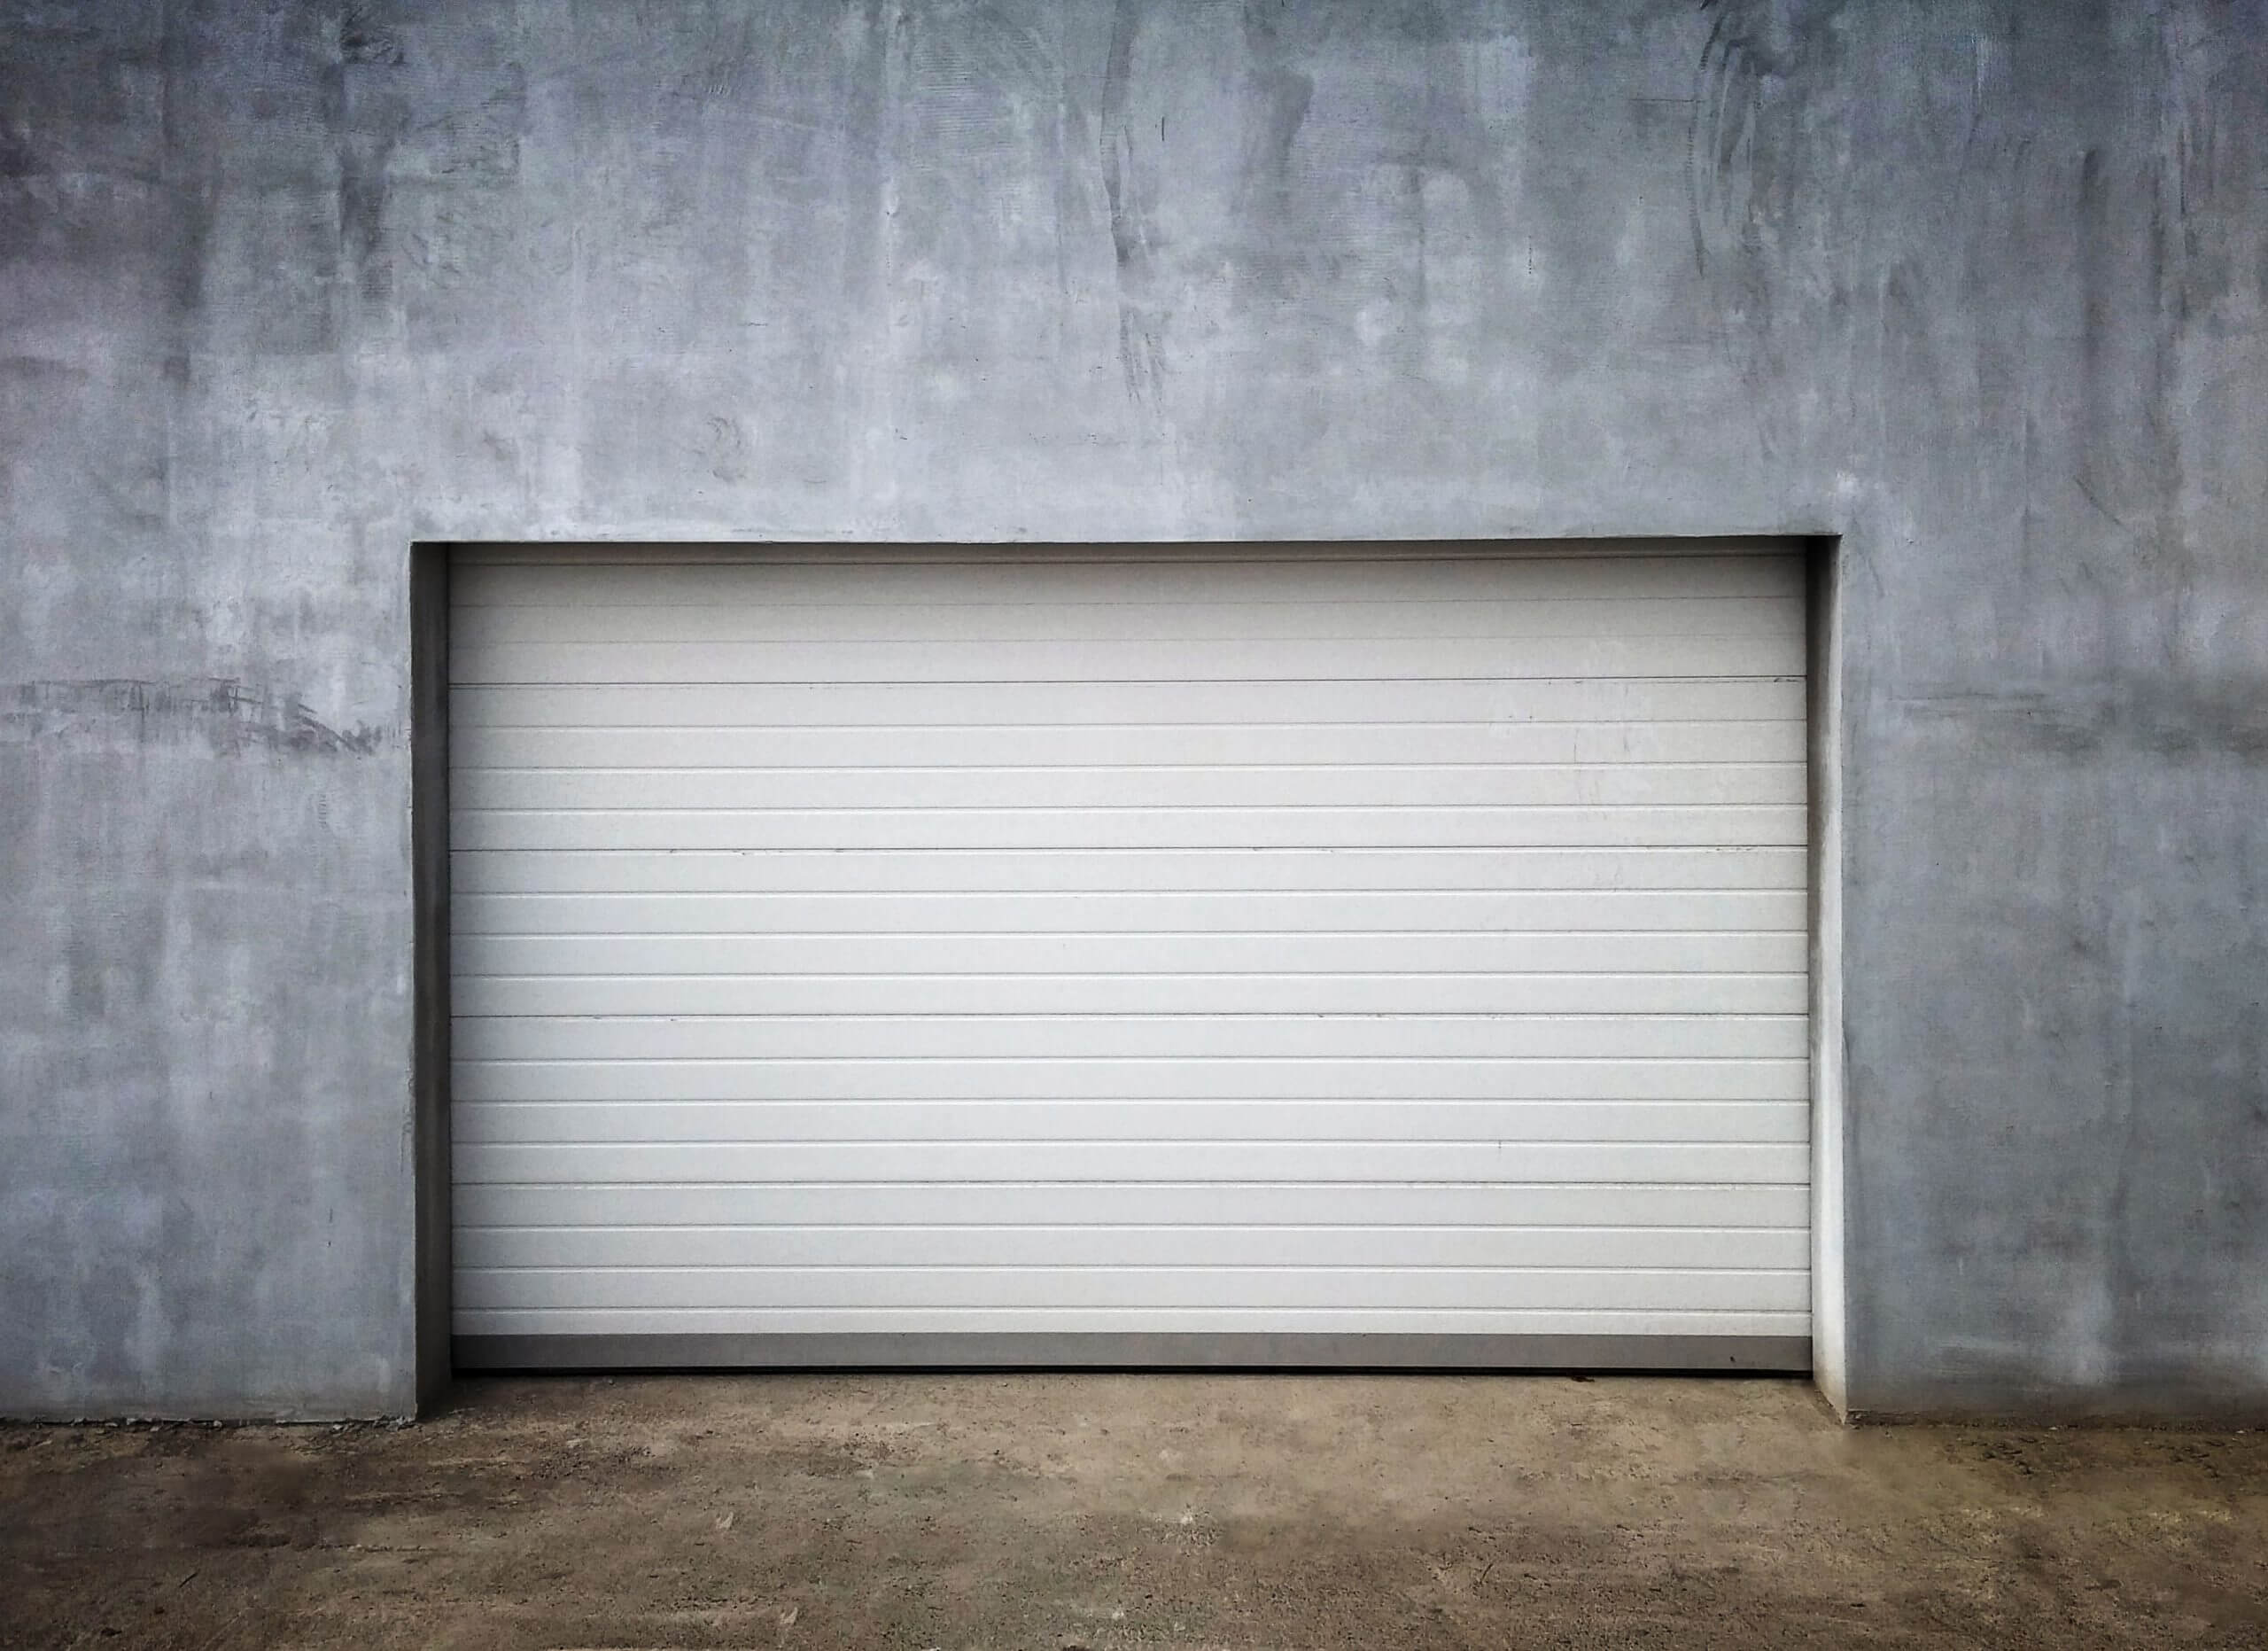 Cuál es la potencia para un motor de puerta de garaje? » Puertas